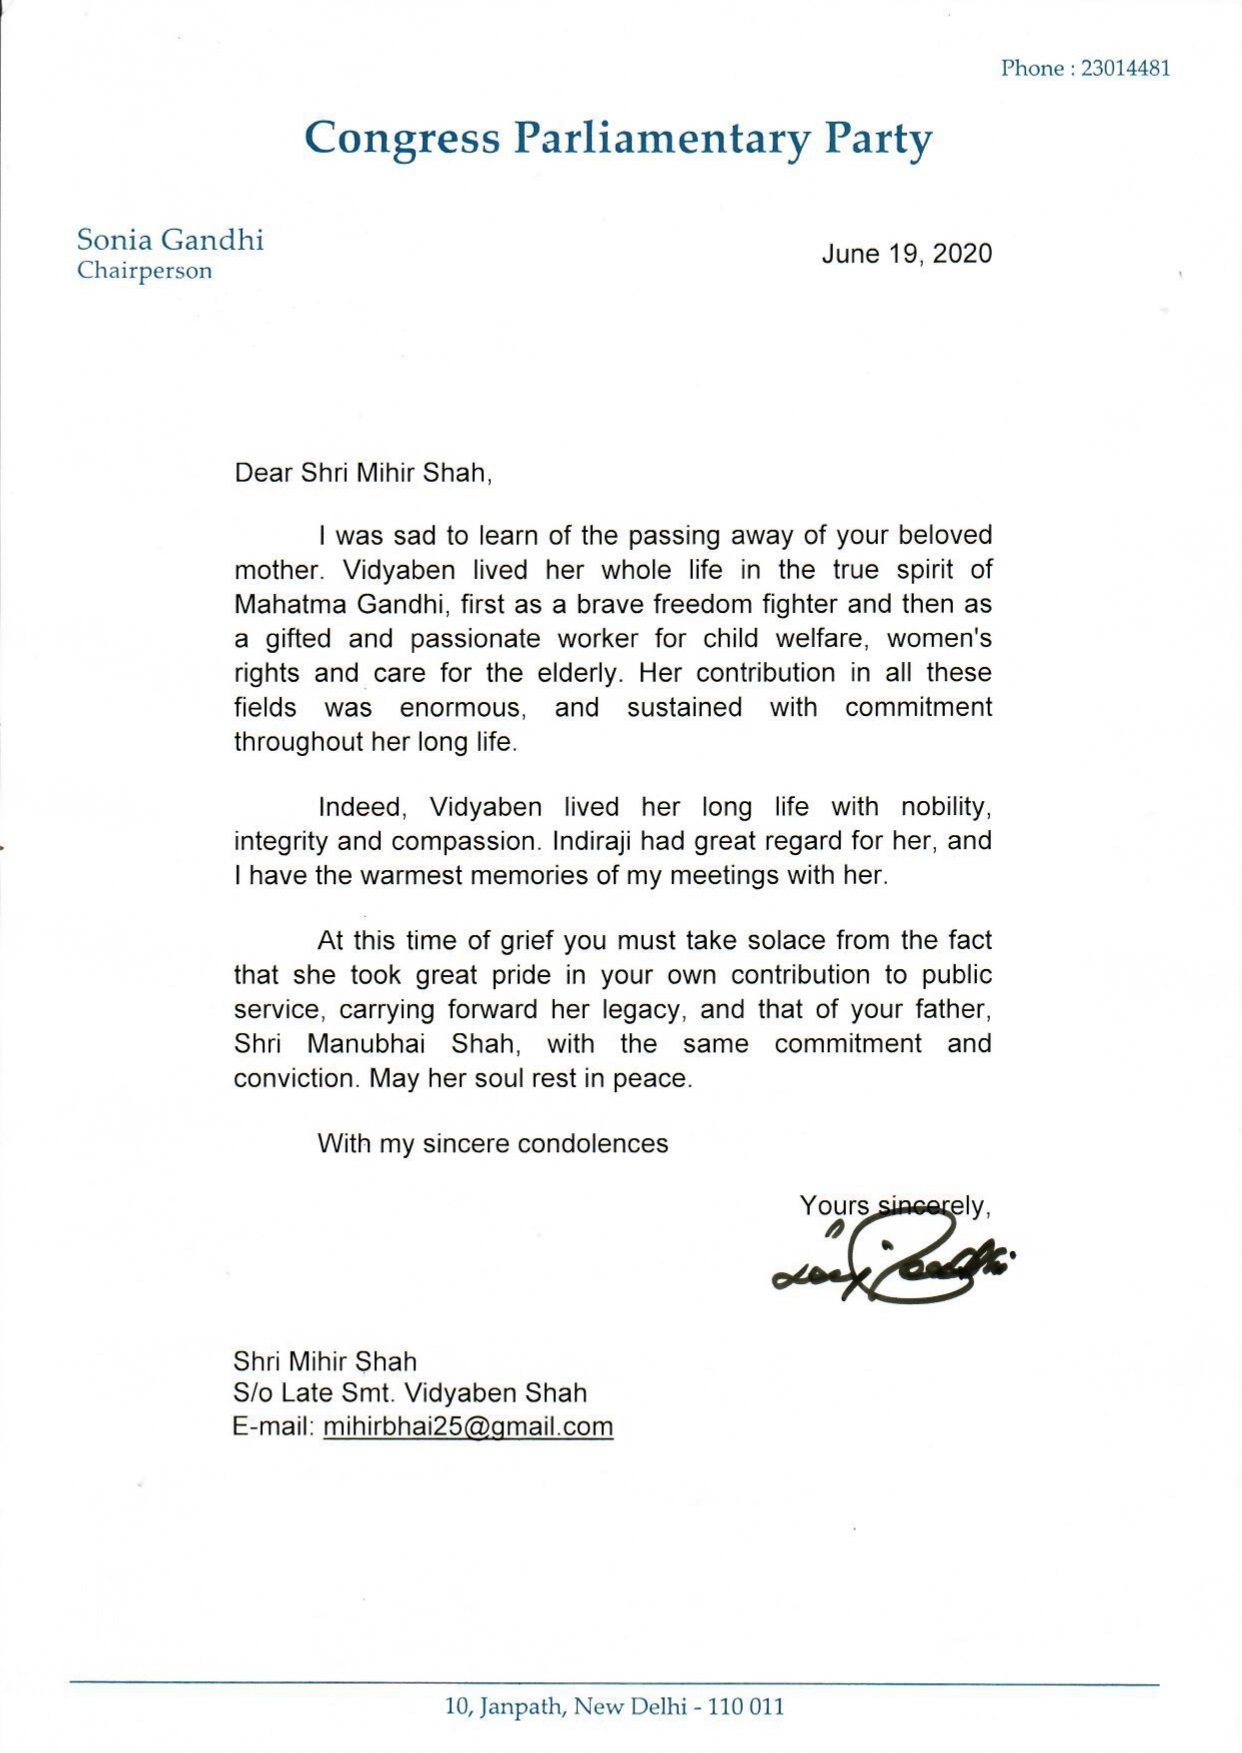 Letter of Smt Sonia Gandhi